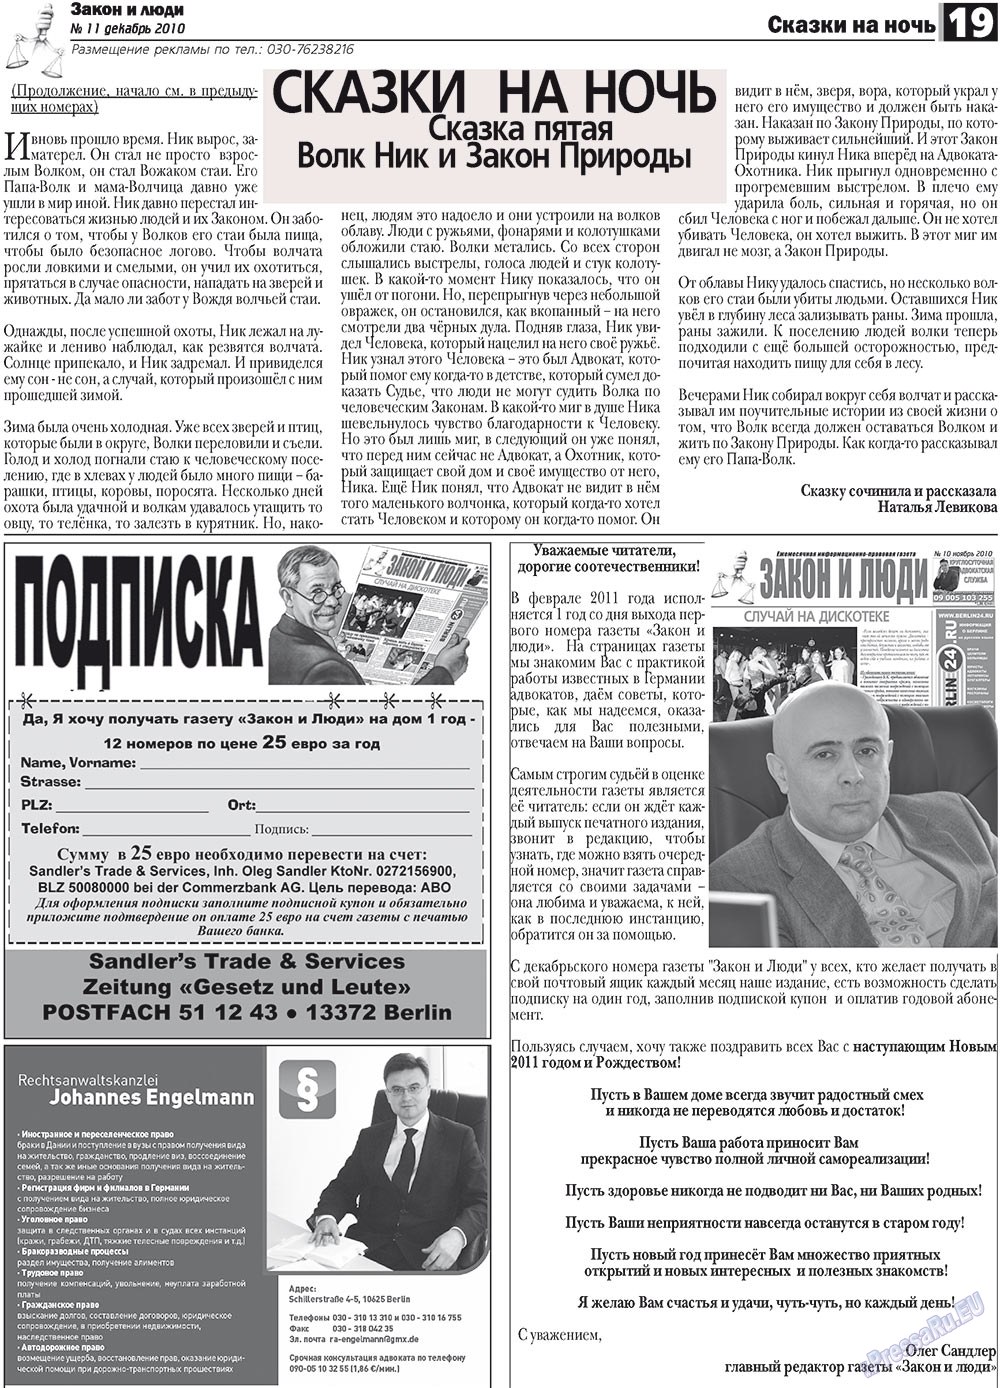 Закон и люди, газета. 2010 №11 стр.19